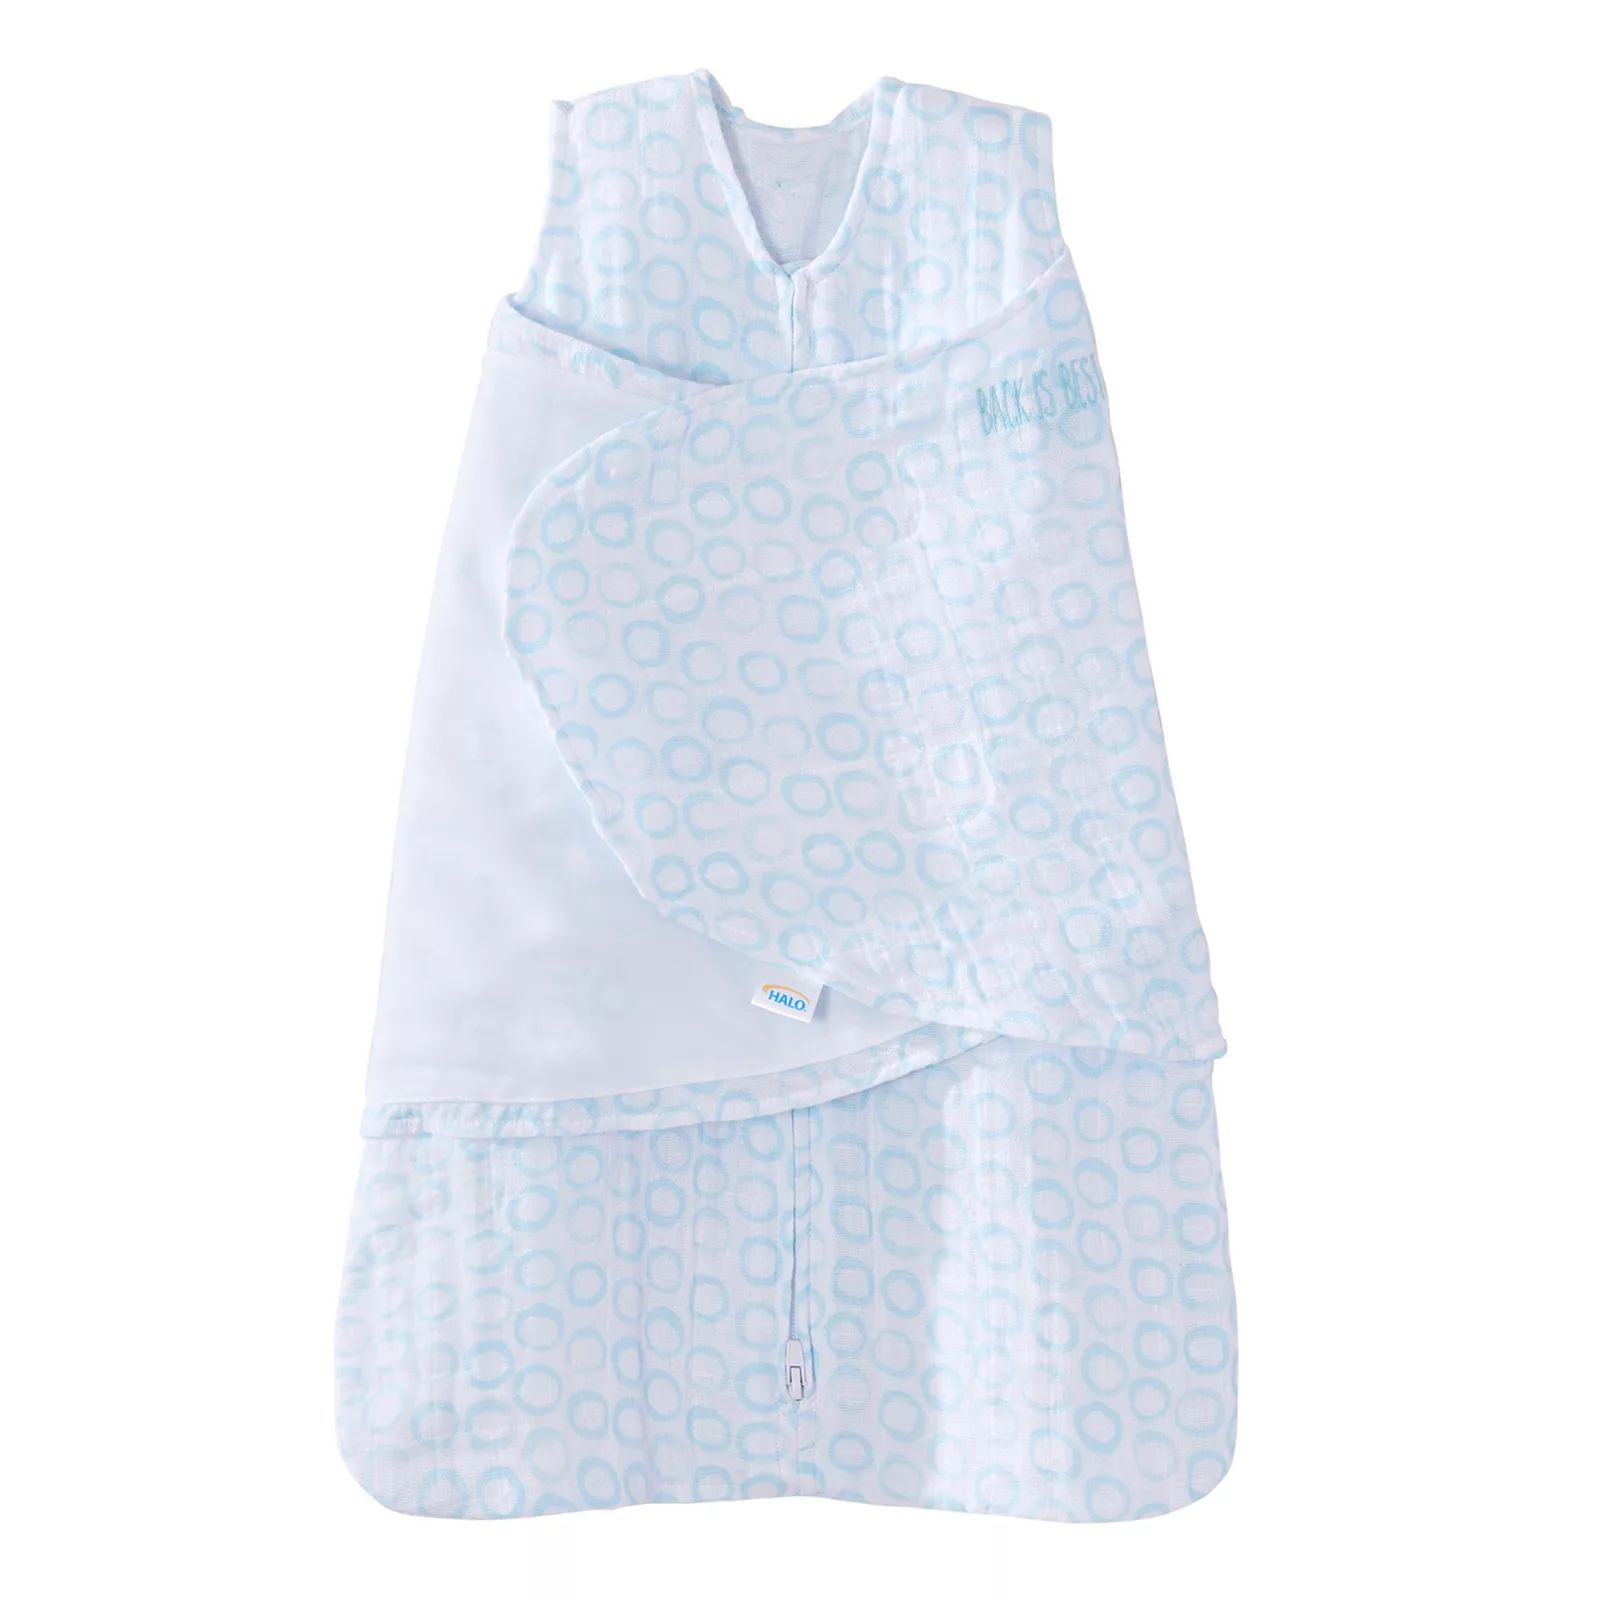 Baby HALO Muslin Turquoise Circles SleepSack Swaddle, Infant Boy's, Size: Small, Turquoise/Blue | Kohl's